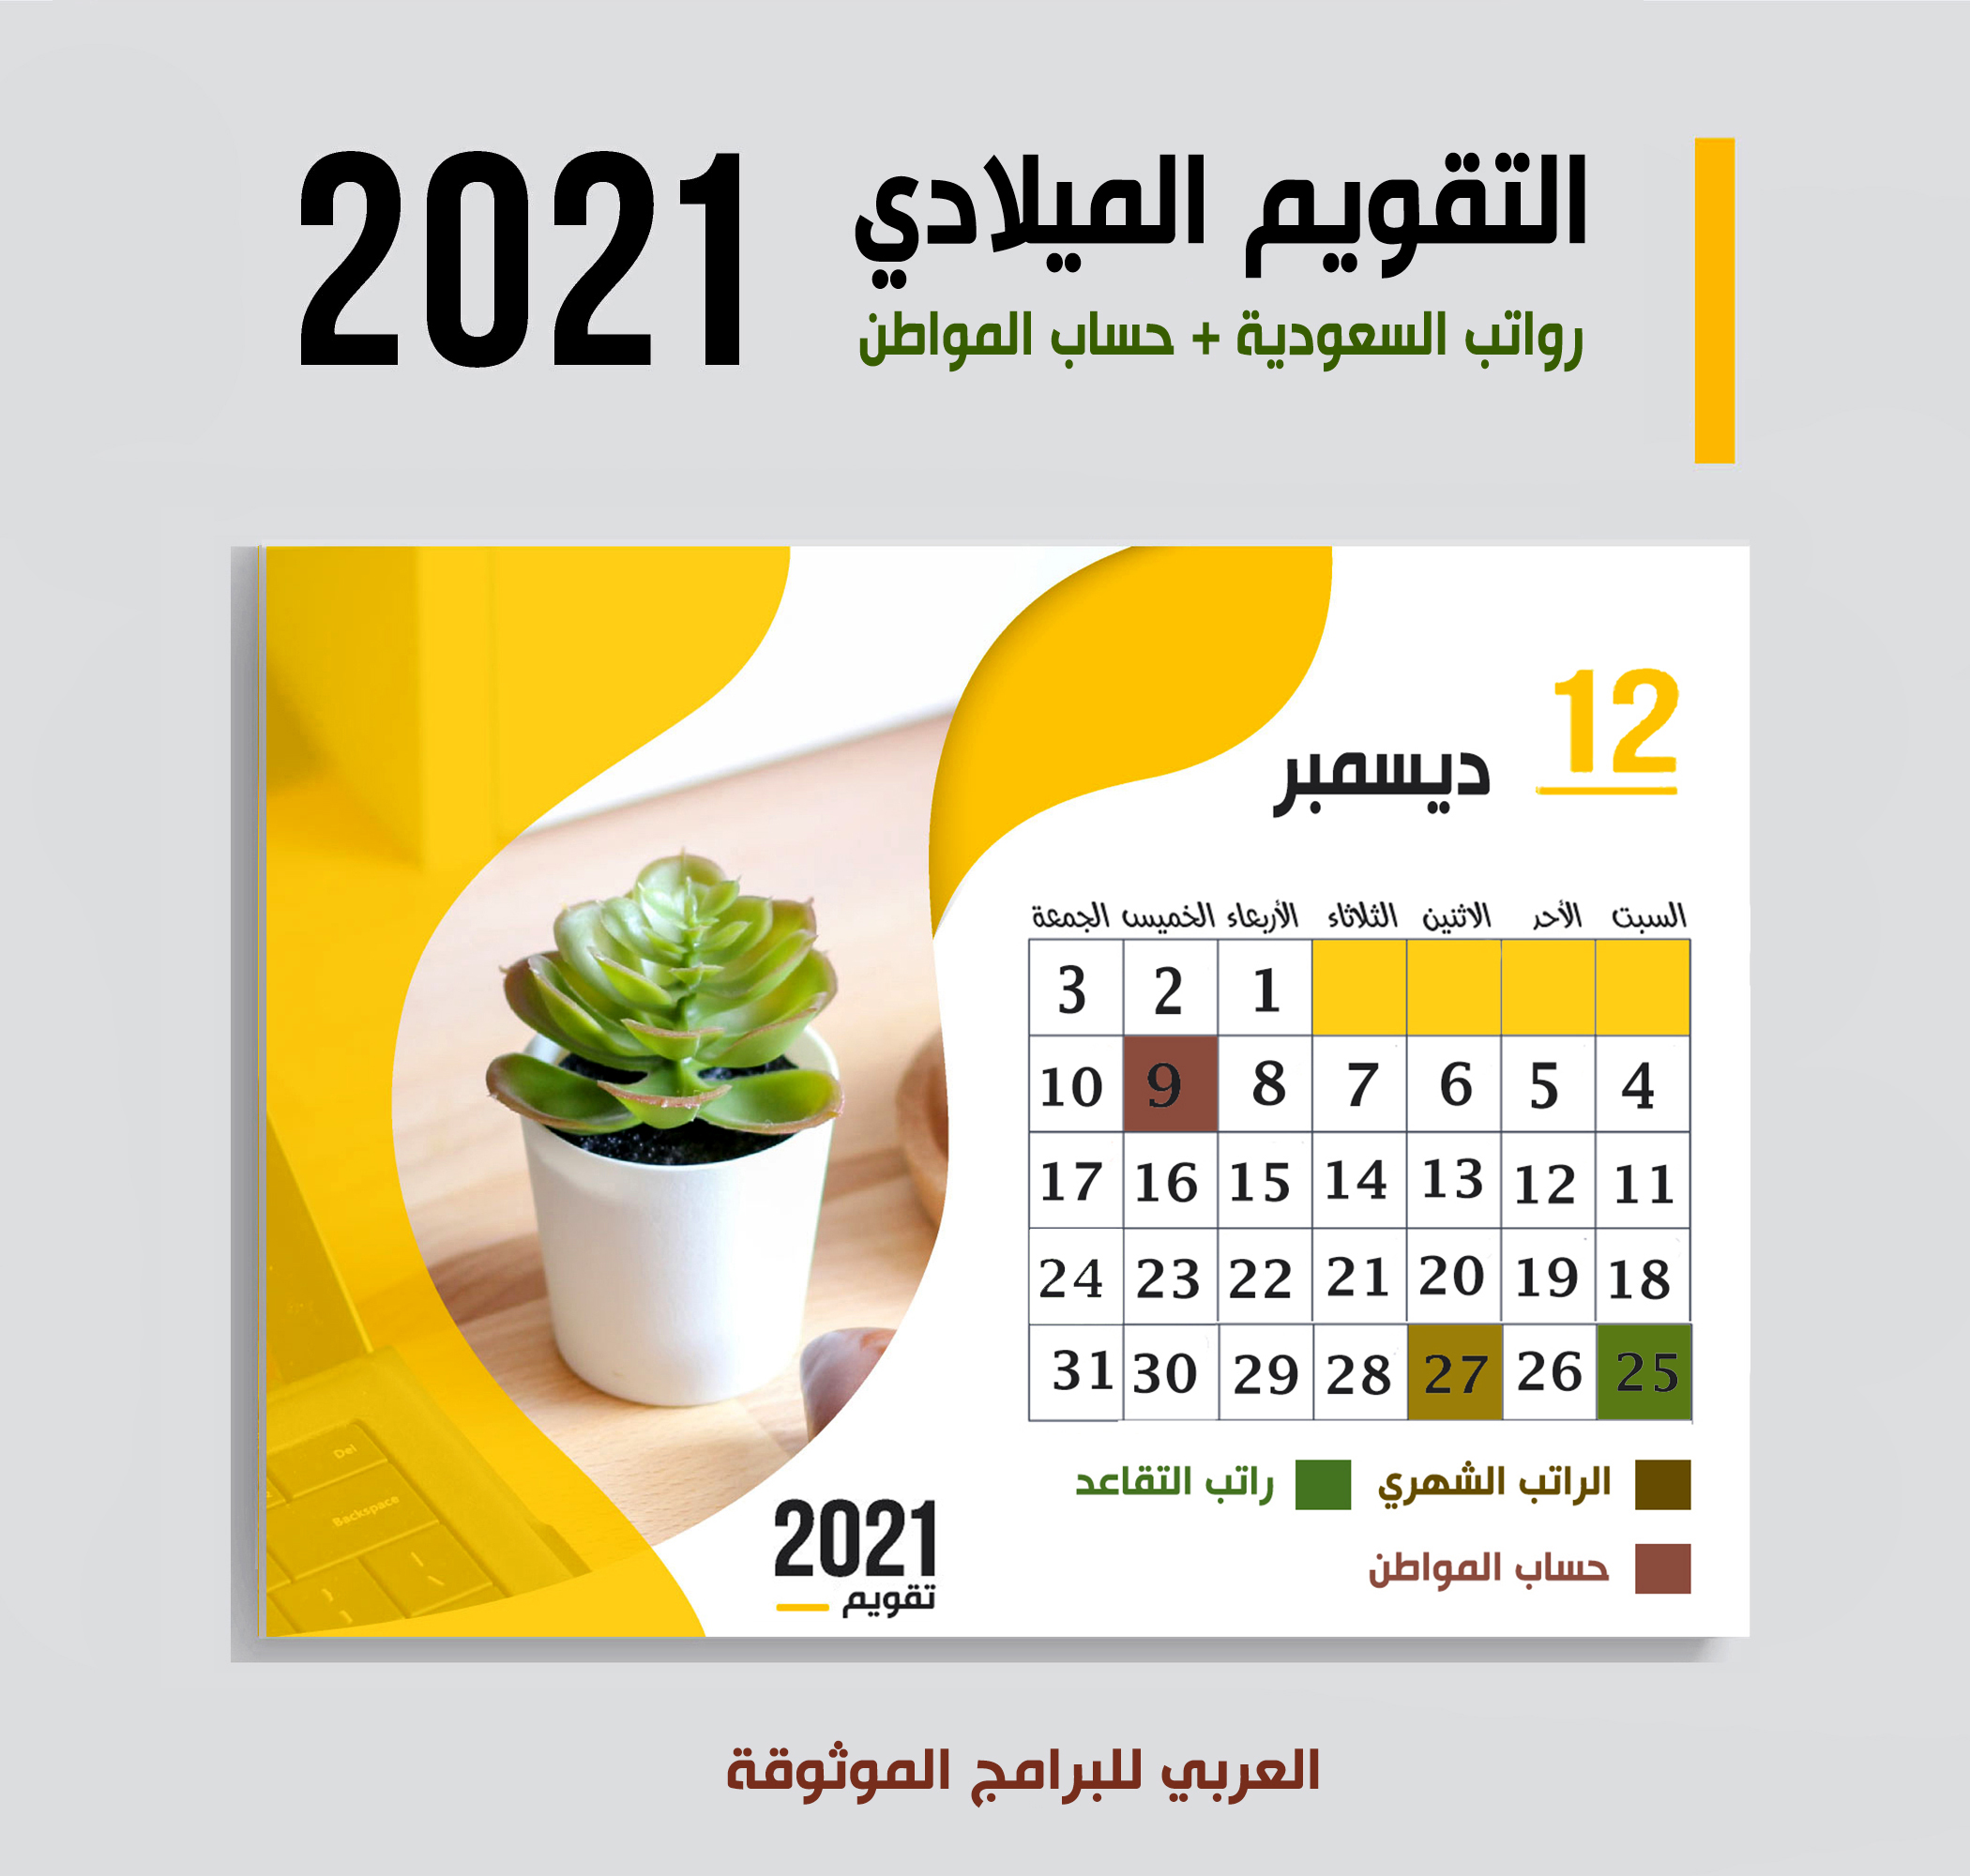 موعد صرف رواتب السعودية شهر ديسمبر 2021 موعد حساب المواطن + رواتب التقاعد الضمان